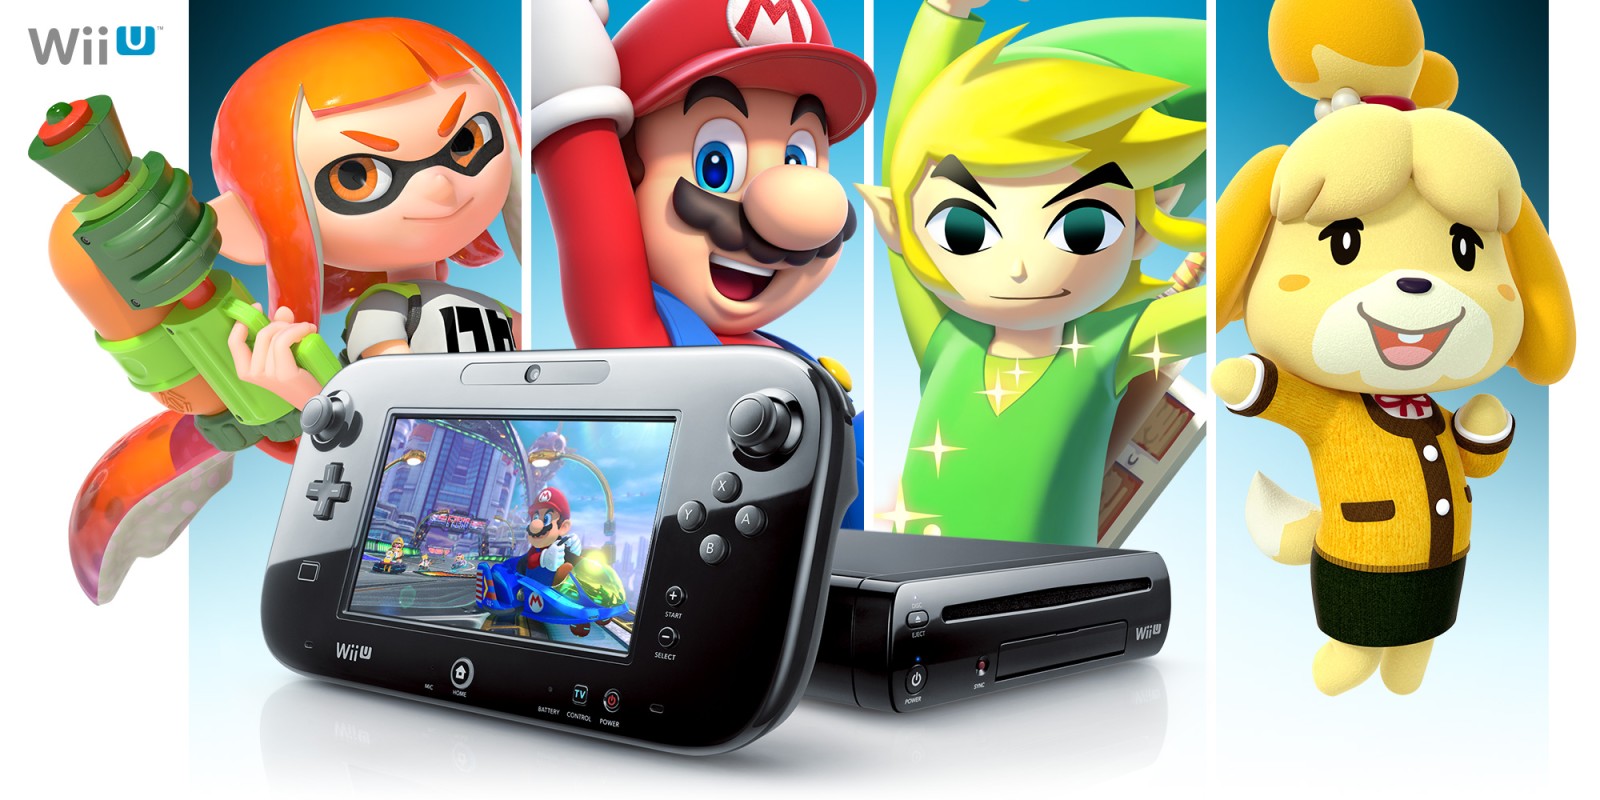 任天堂淡出3DS及Wii U 明年3月起關閉eShop – EJ Tech